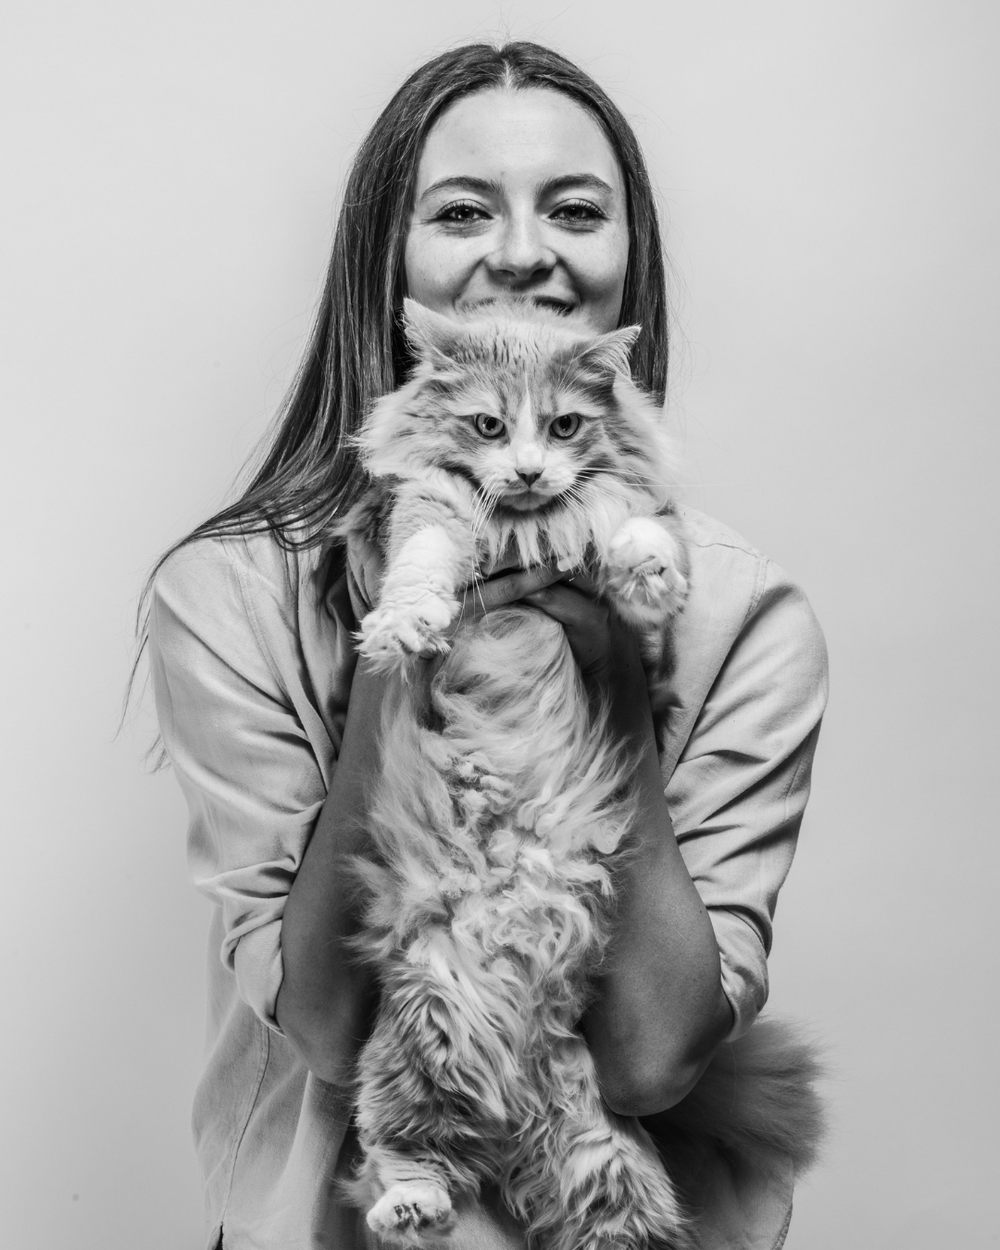 équipe Ziggy : Marie, fondatrice de la marque d'alimentation pour chat Ziggy et son chat adulte dans les bras